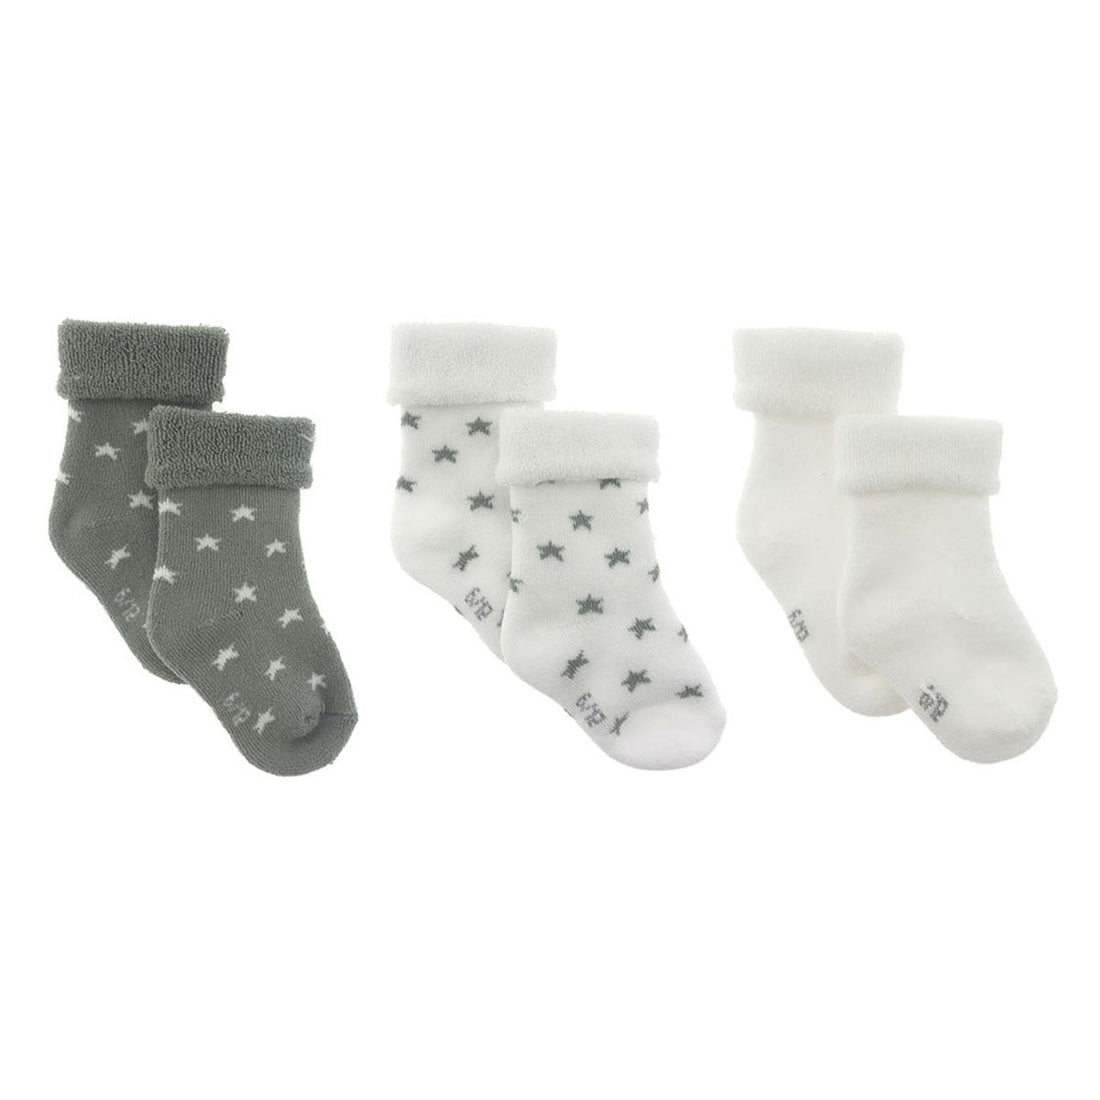 cambrass-set-3-socks-for-baby-star-grey-sz-000-1718-rjc-44177- (2)